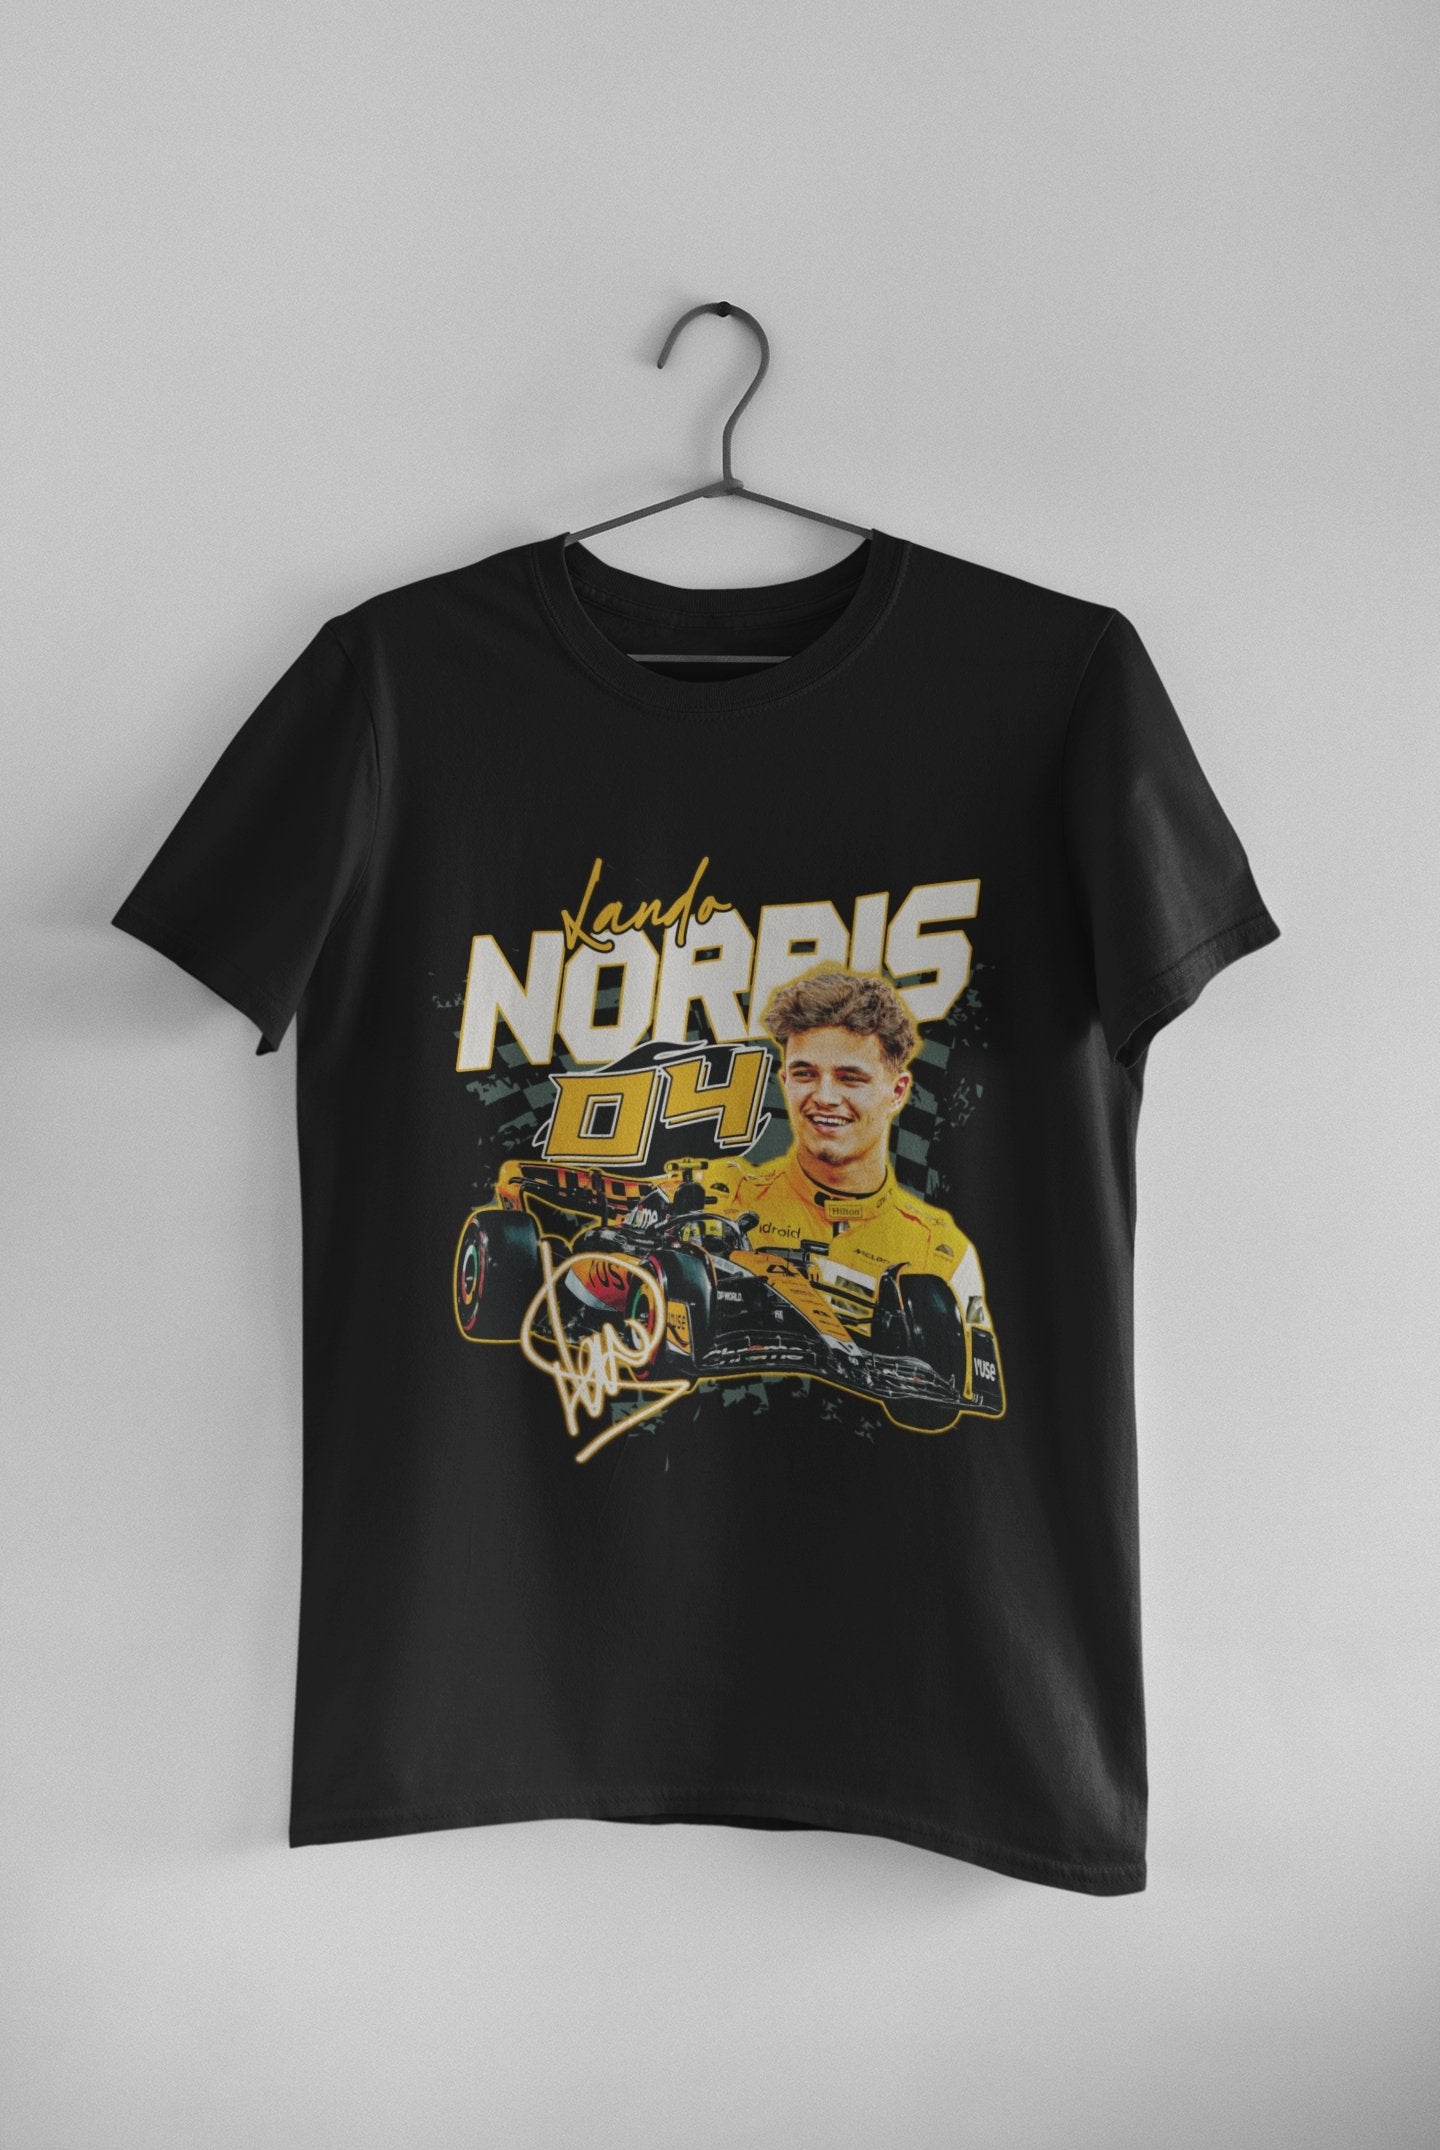 Lando Norris v3 - Unisex t-shirt - Modern Vintage Apparel